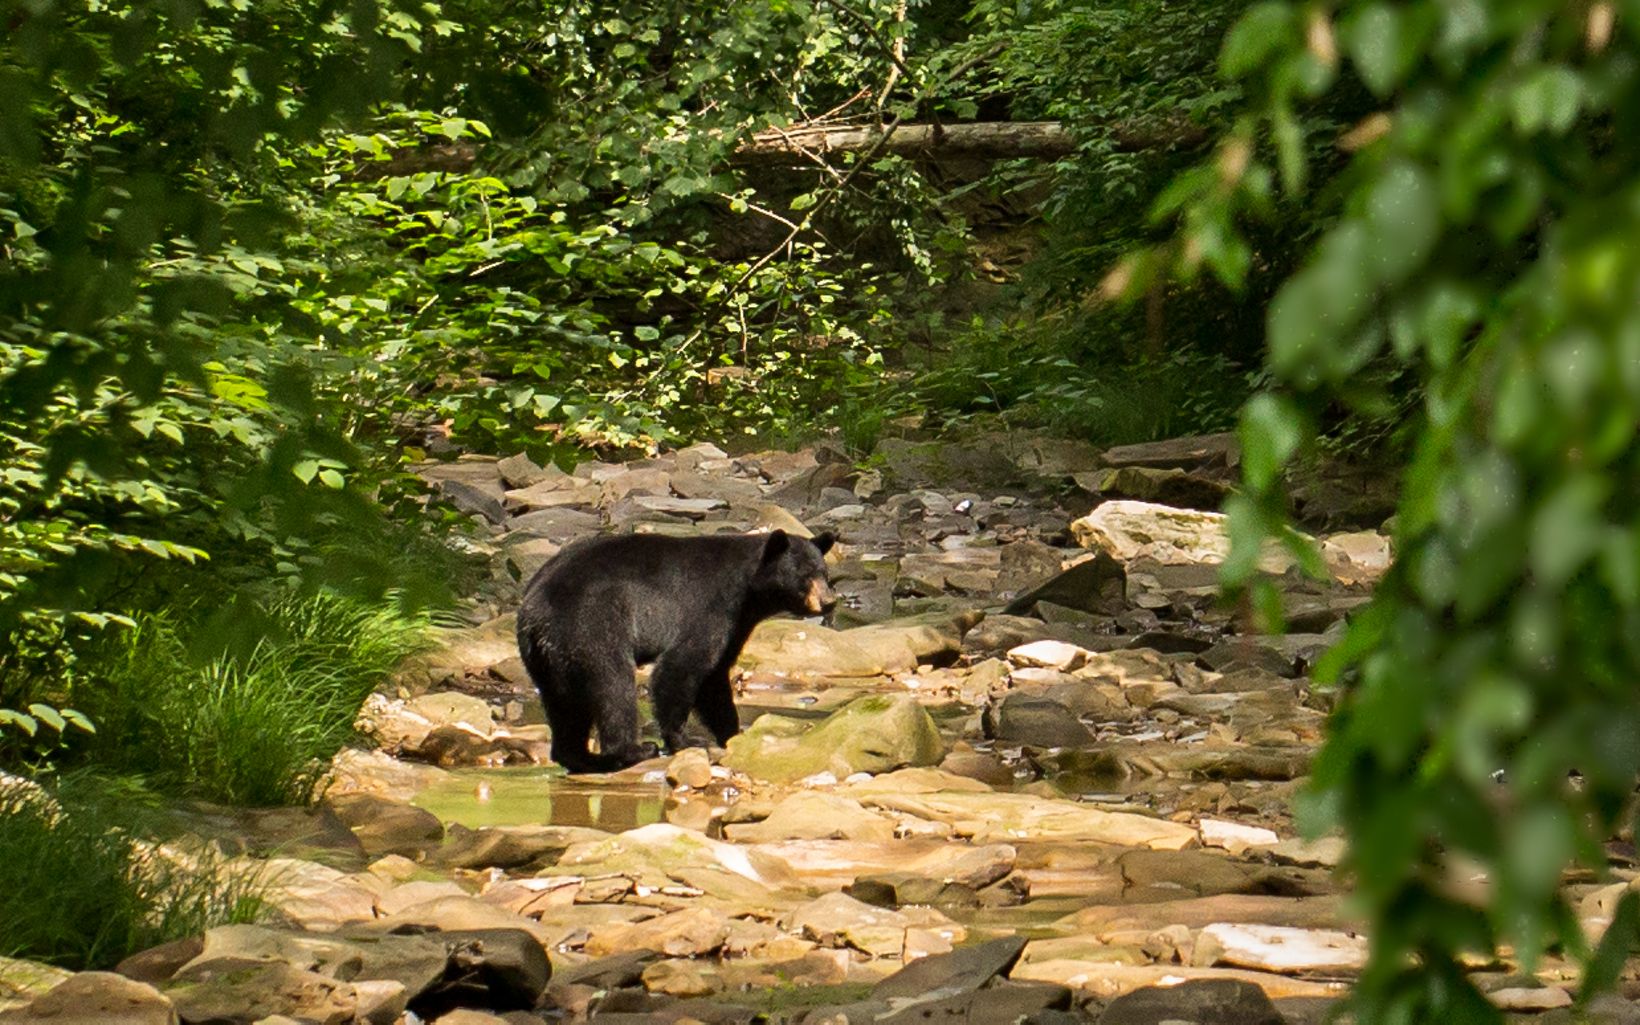 A black bear wades in a rocky creek.